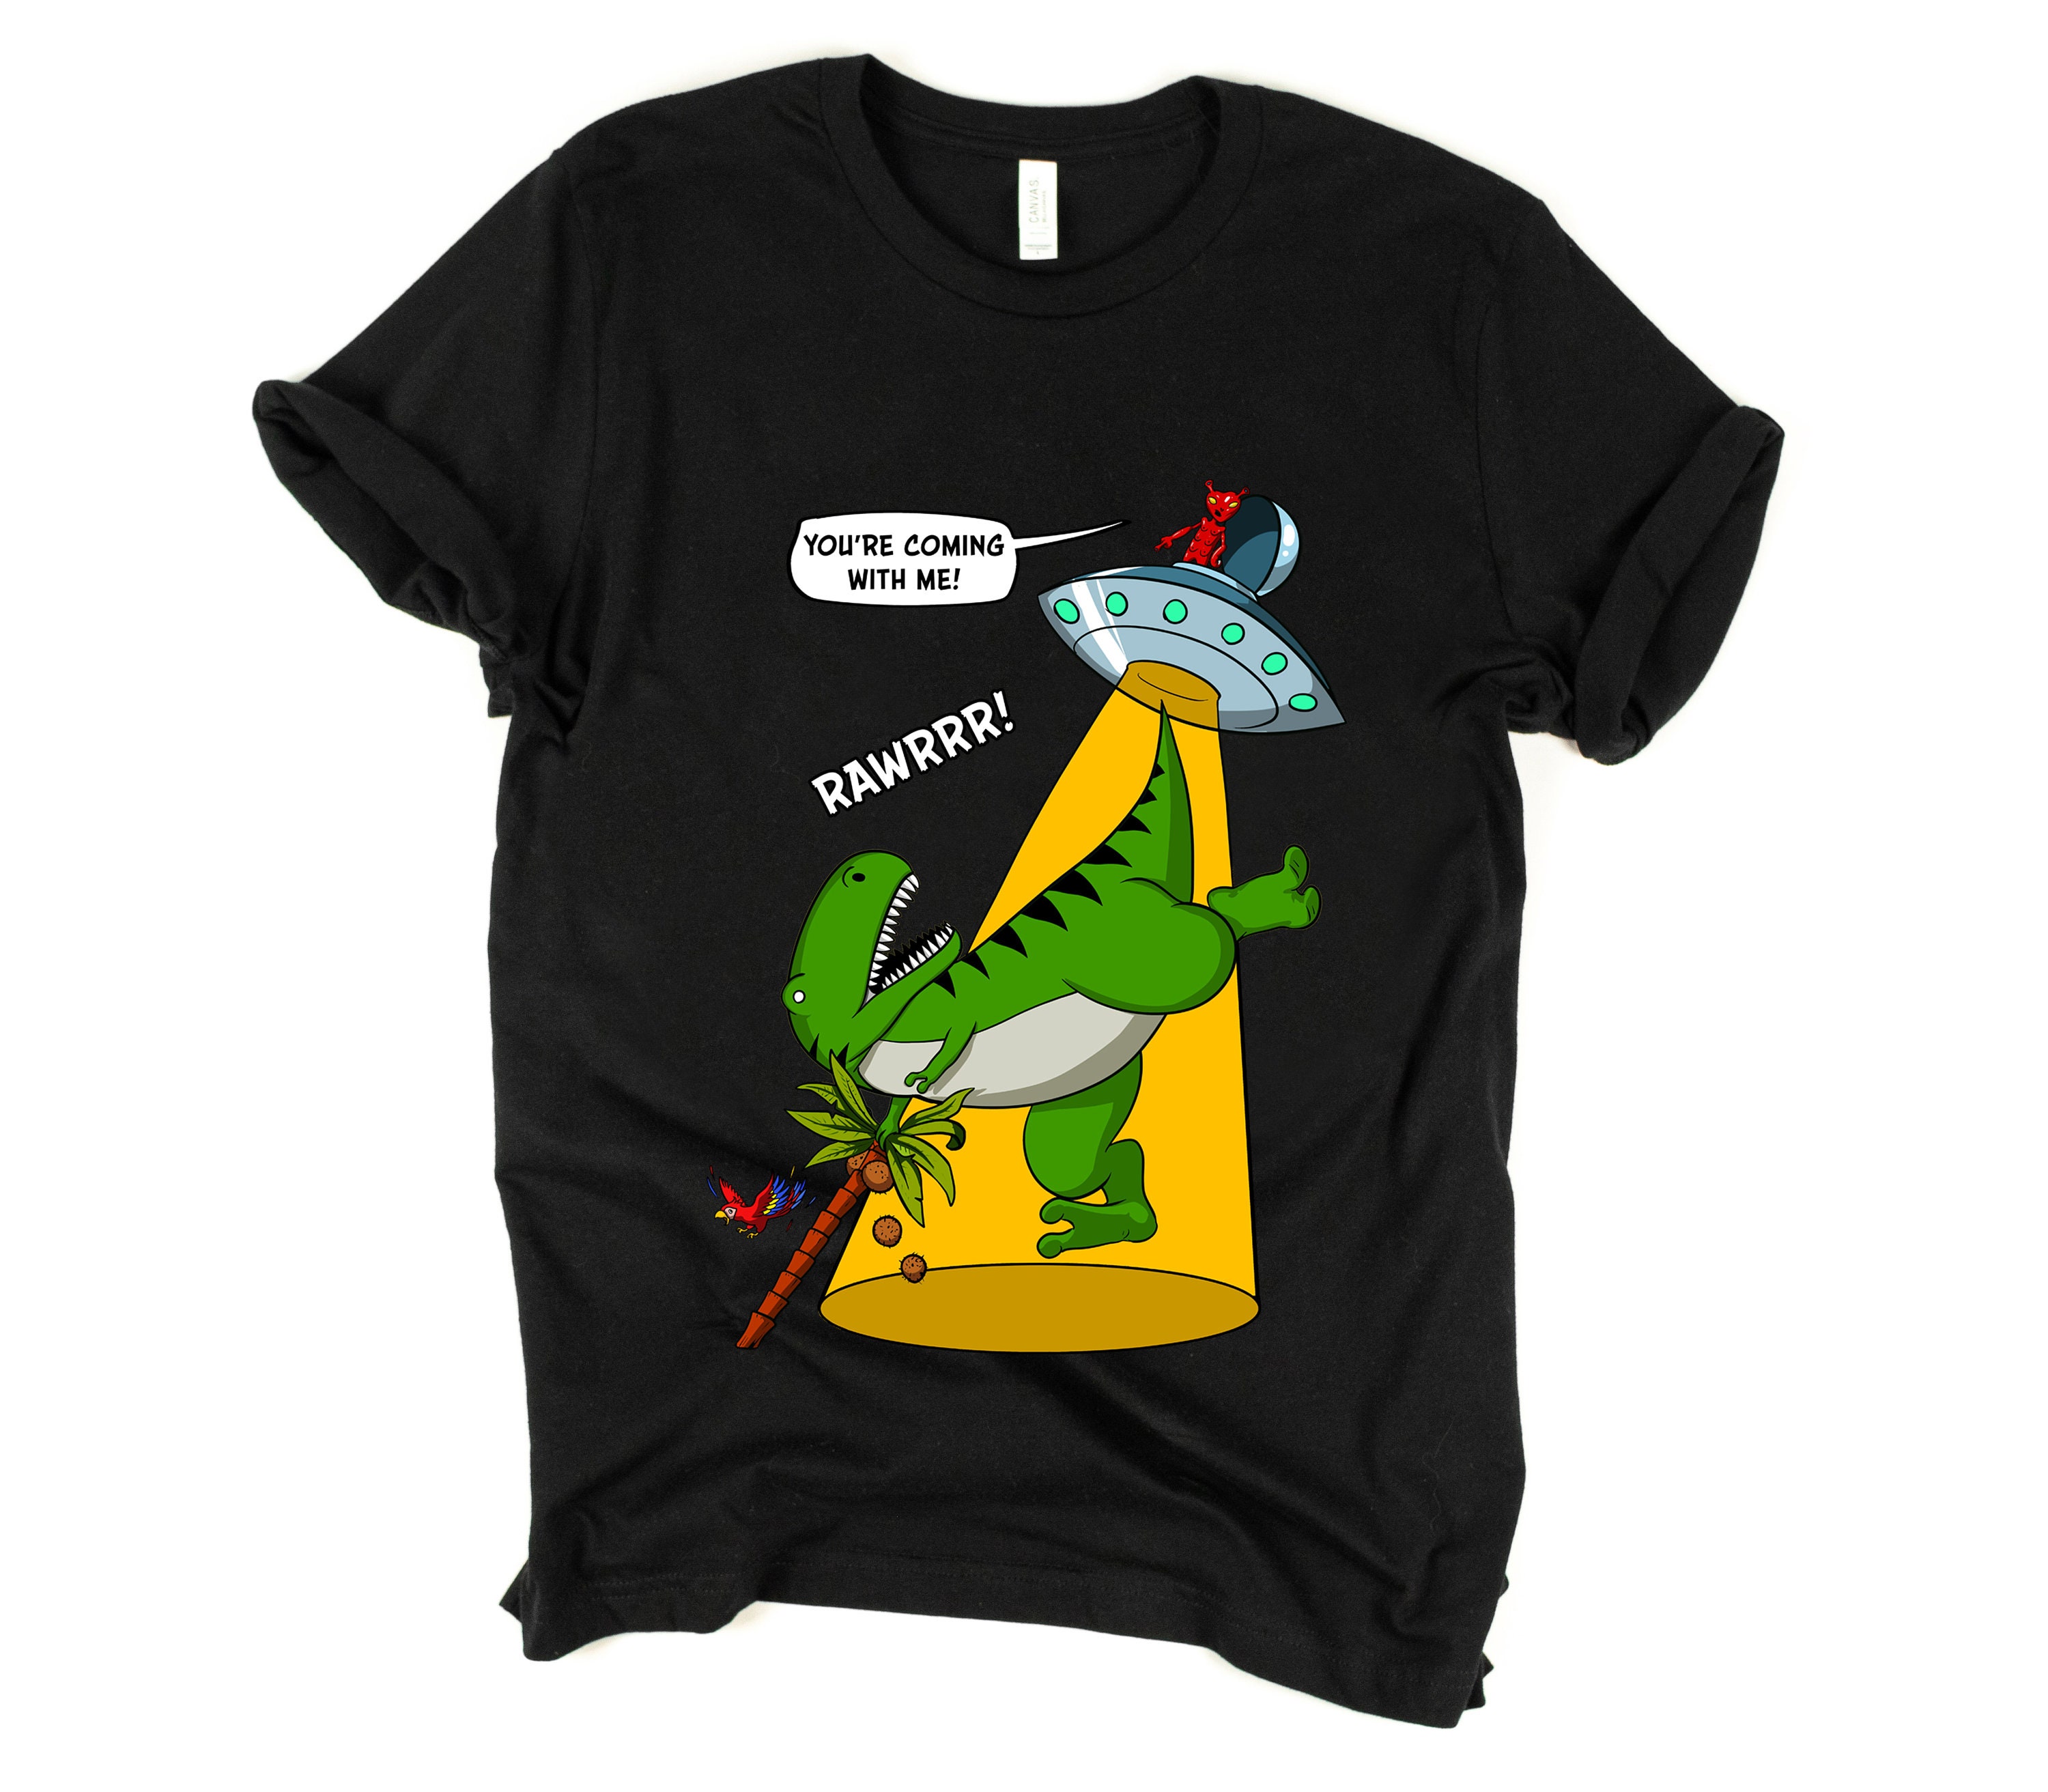 T Rex Dinosaur Alien Abduction T-Shirt Space UFO Shirt | Etsy